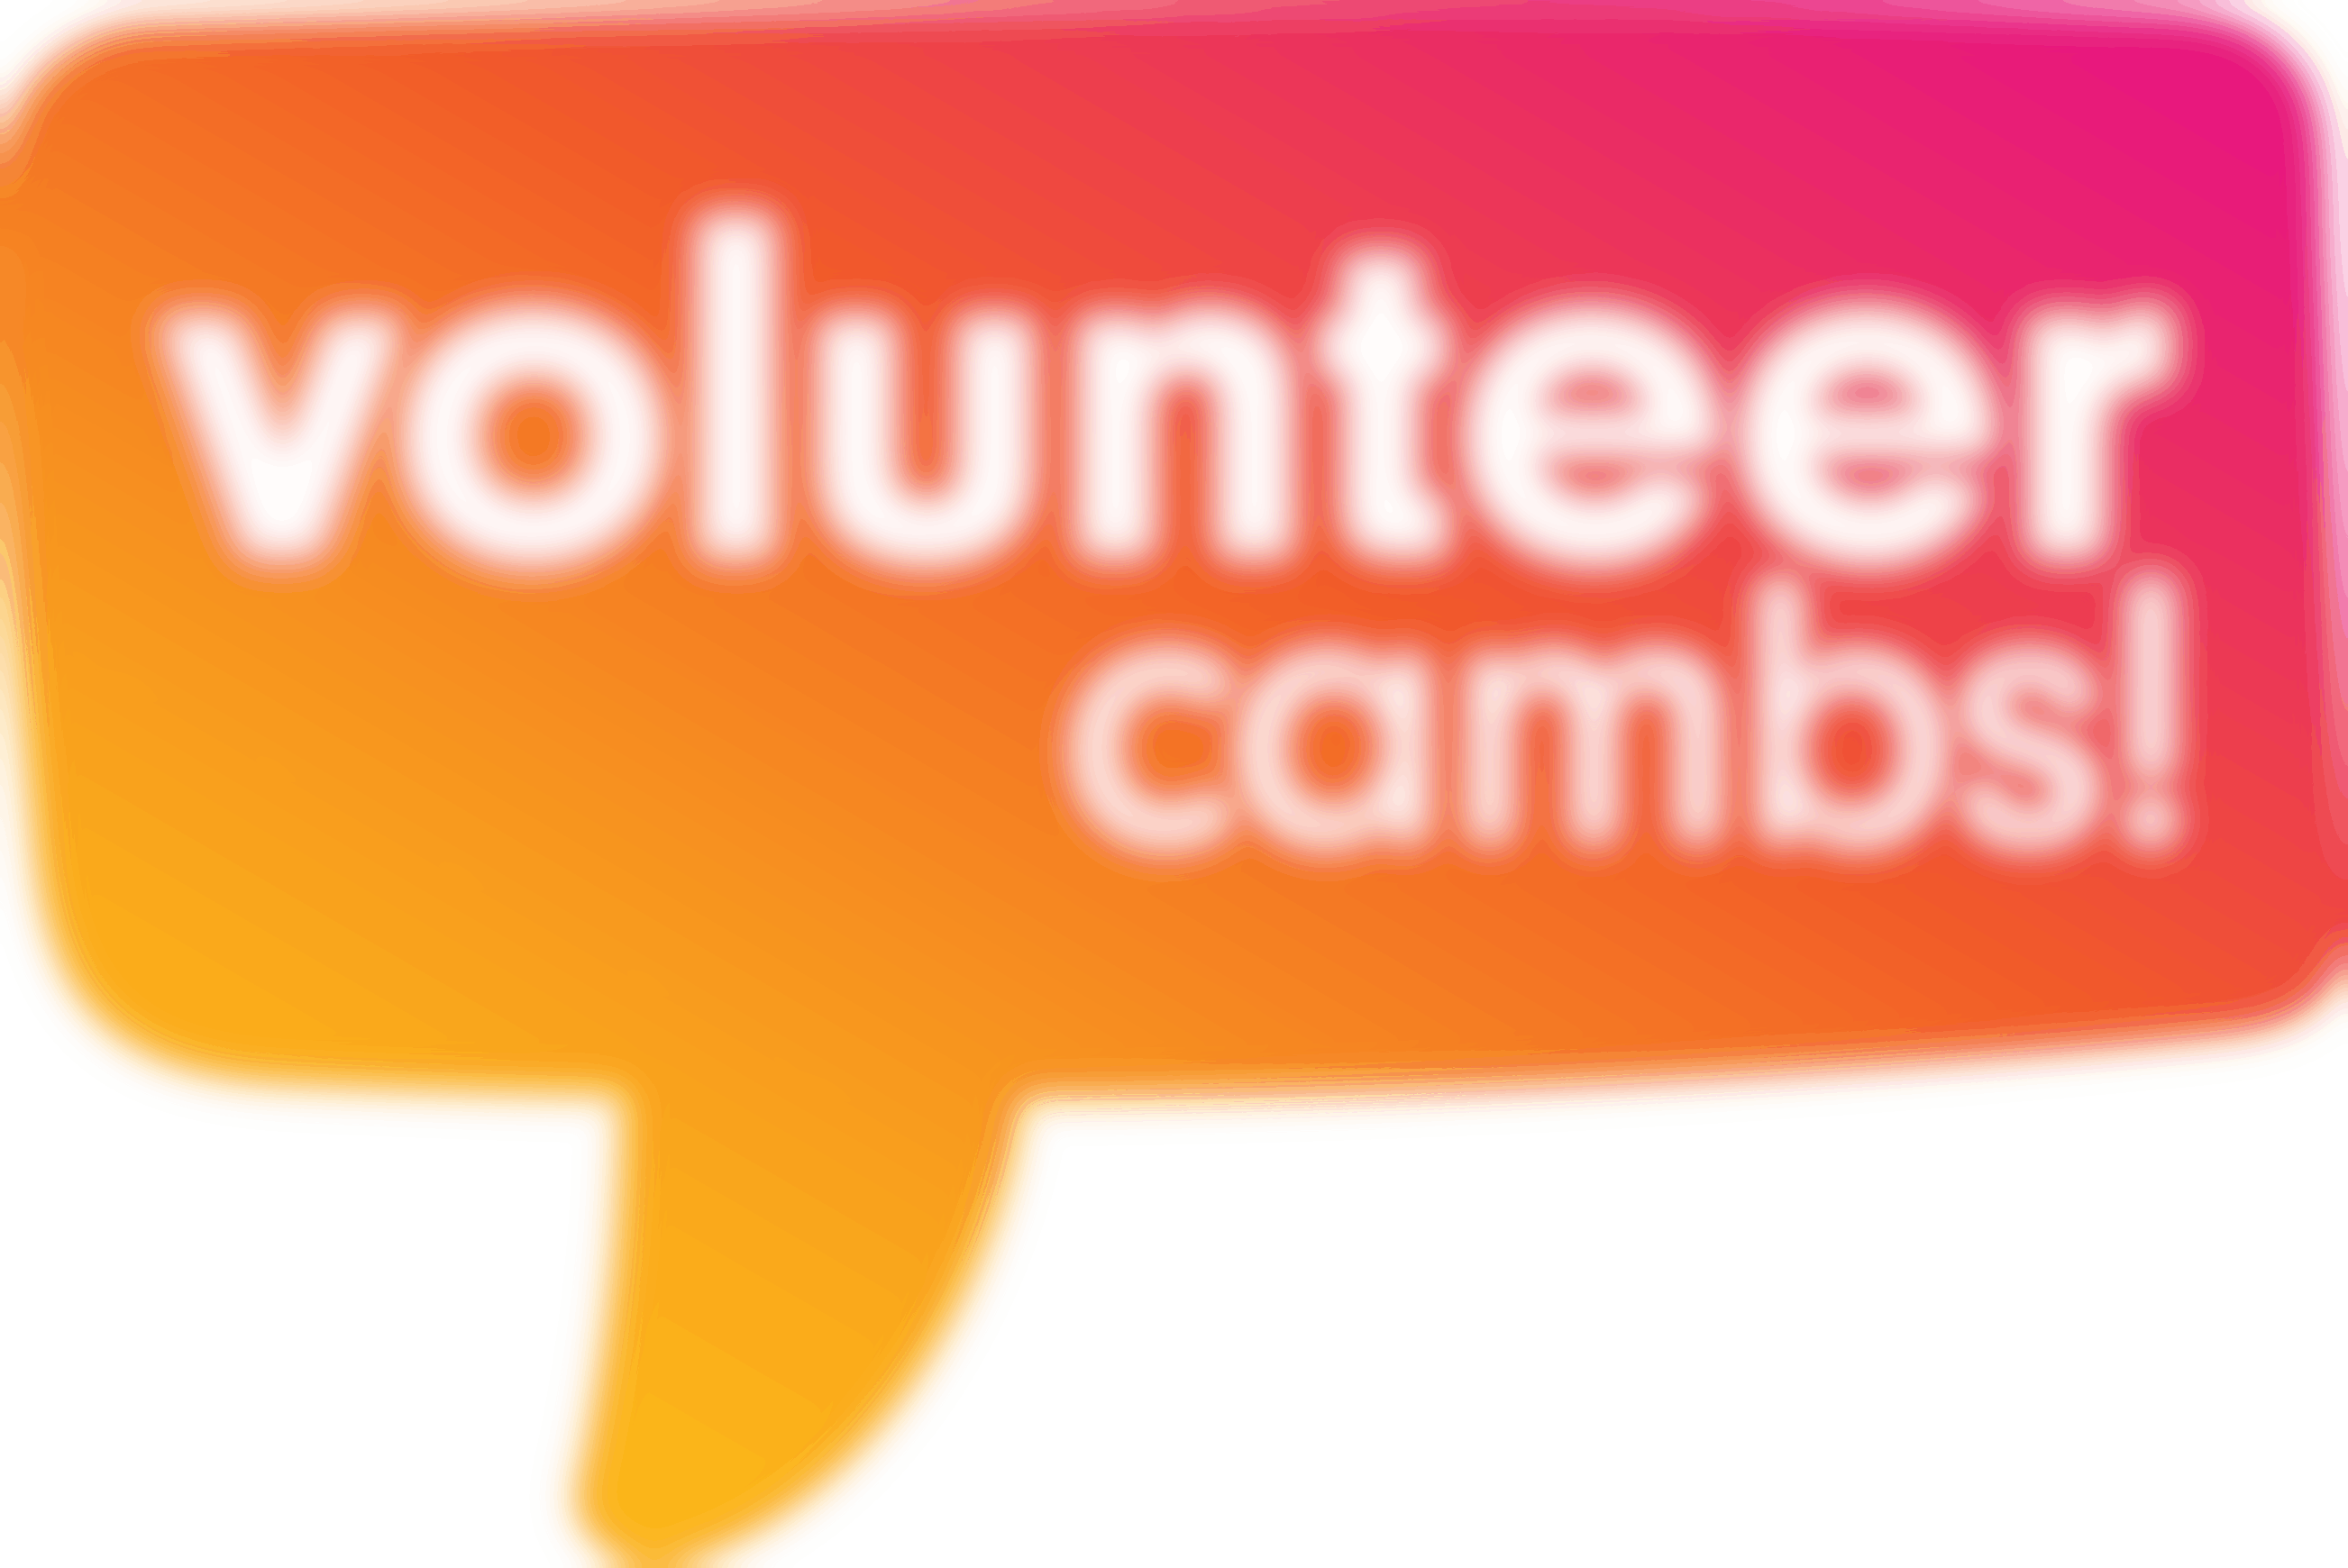 Volunteer Cambs